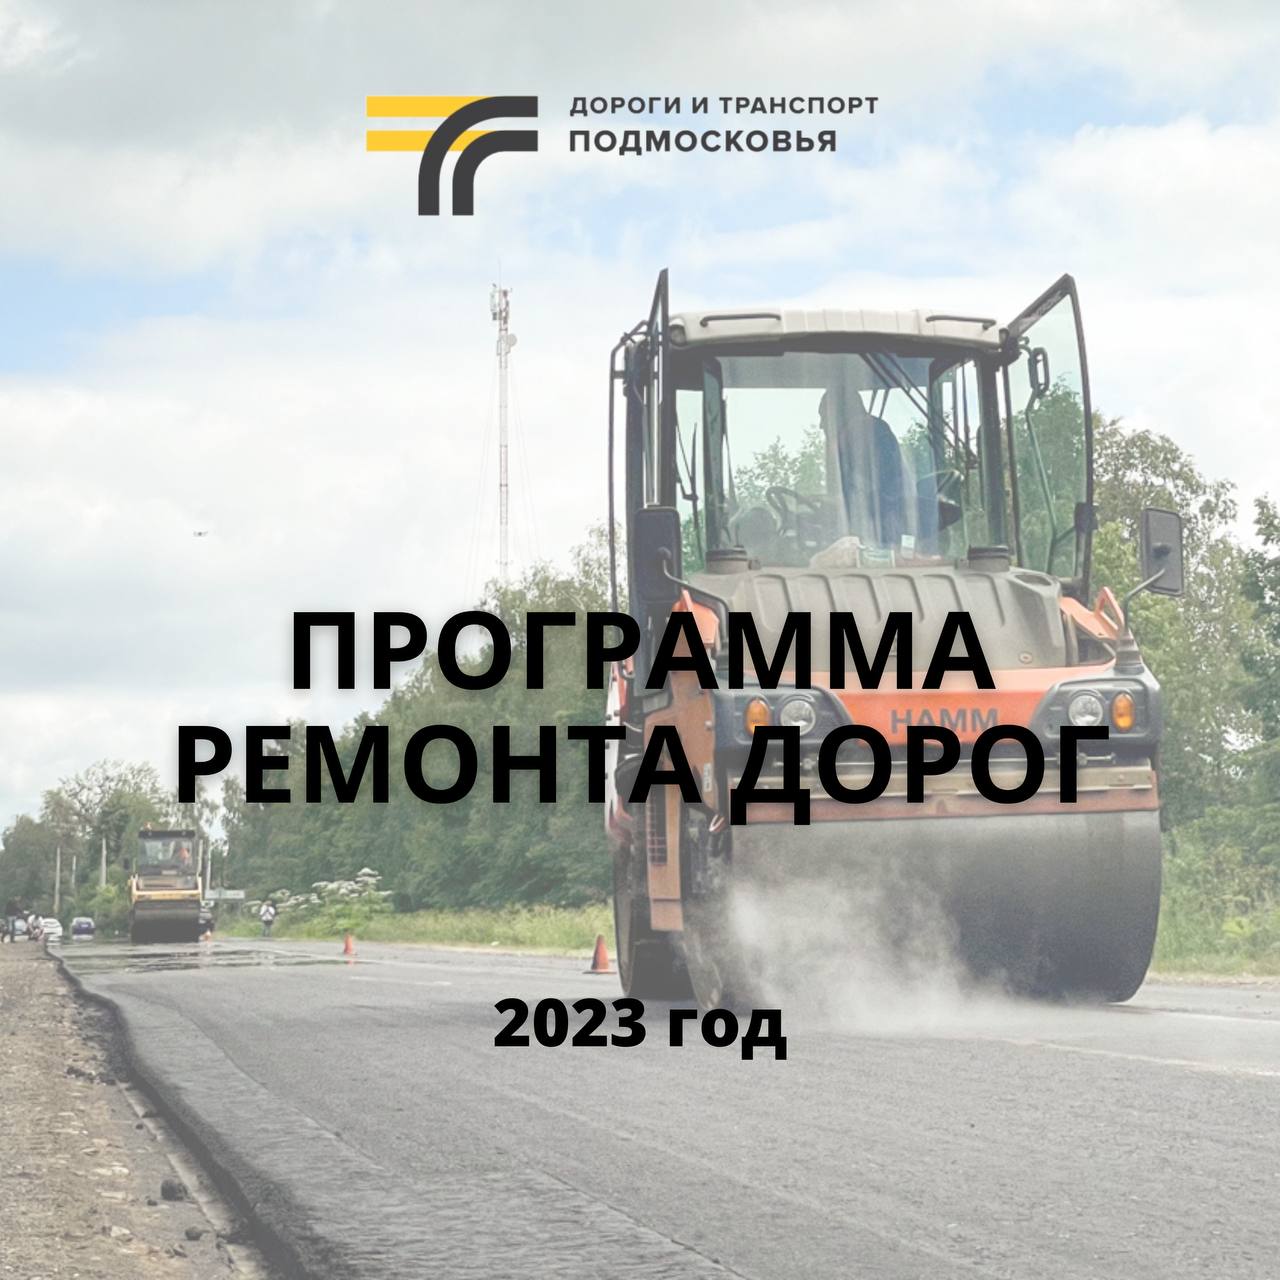 Программа ремонта дорог на 2023 год